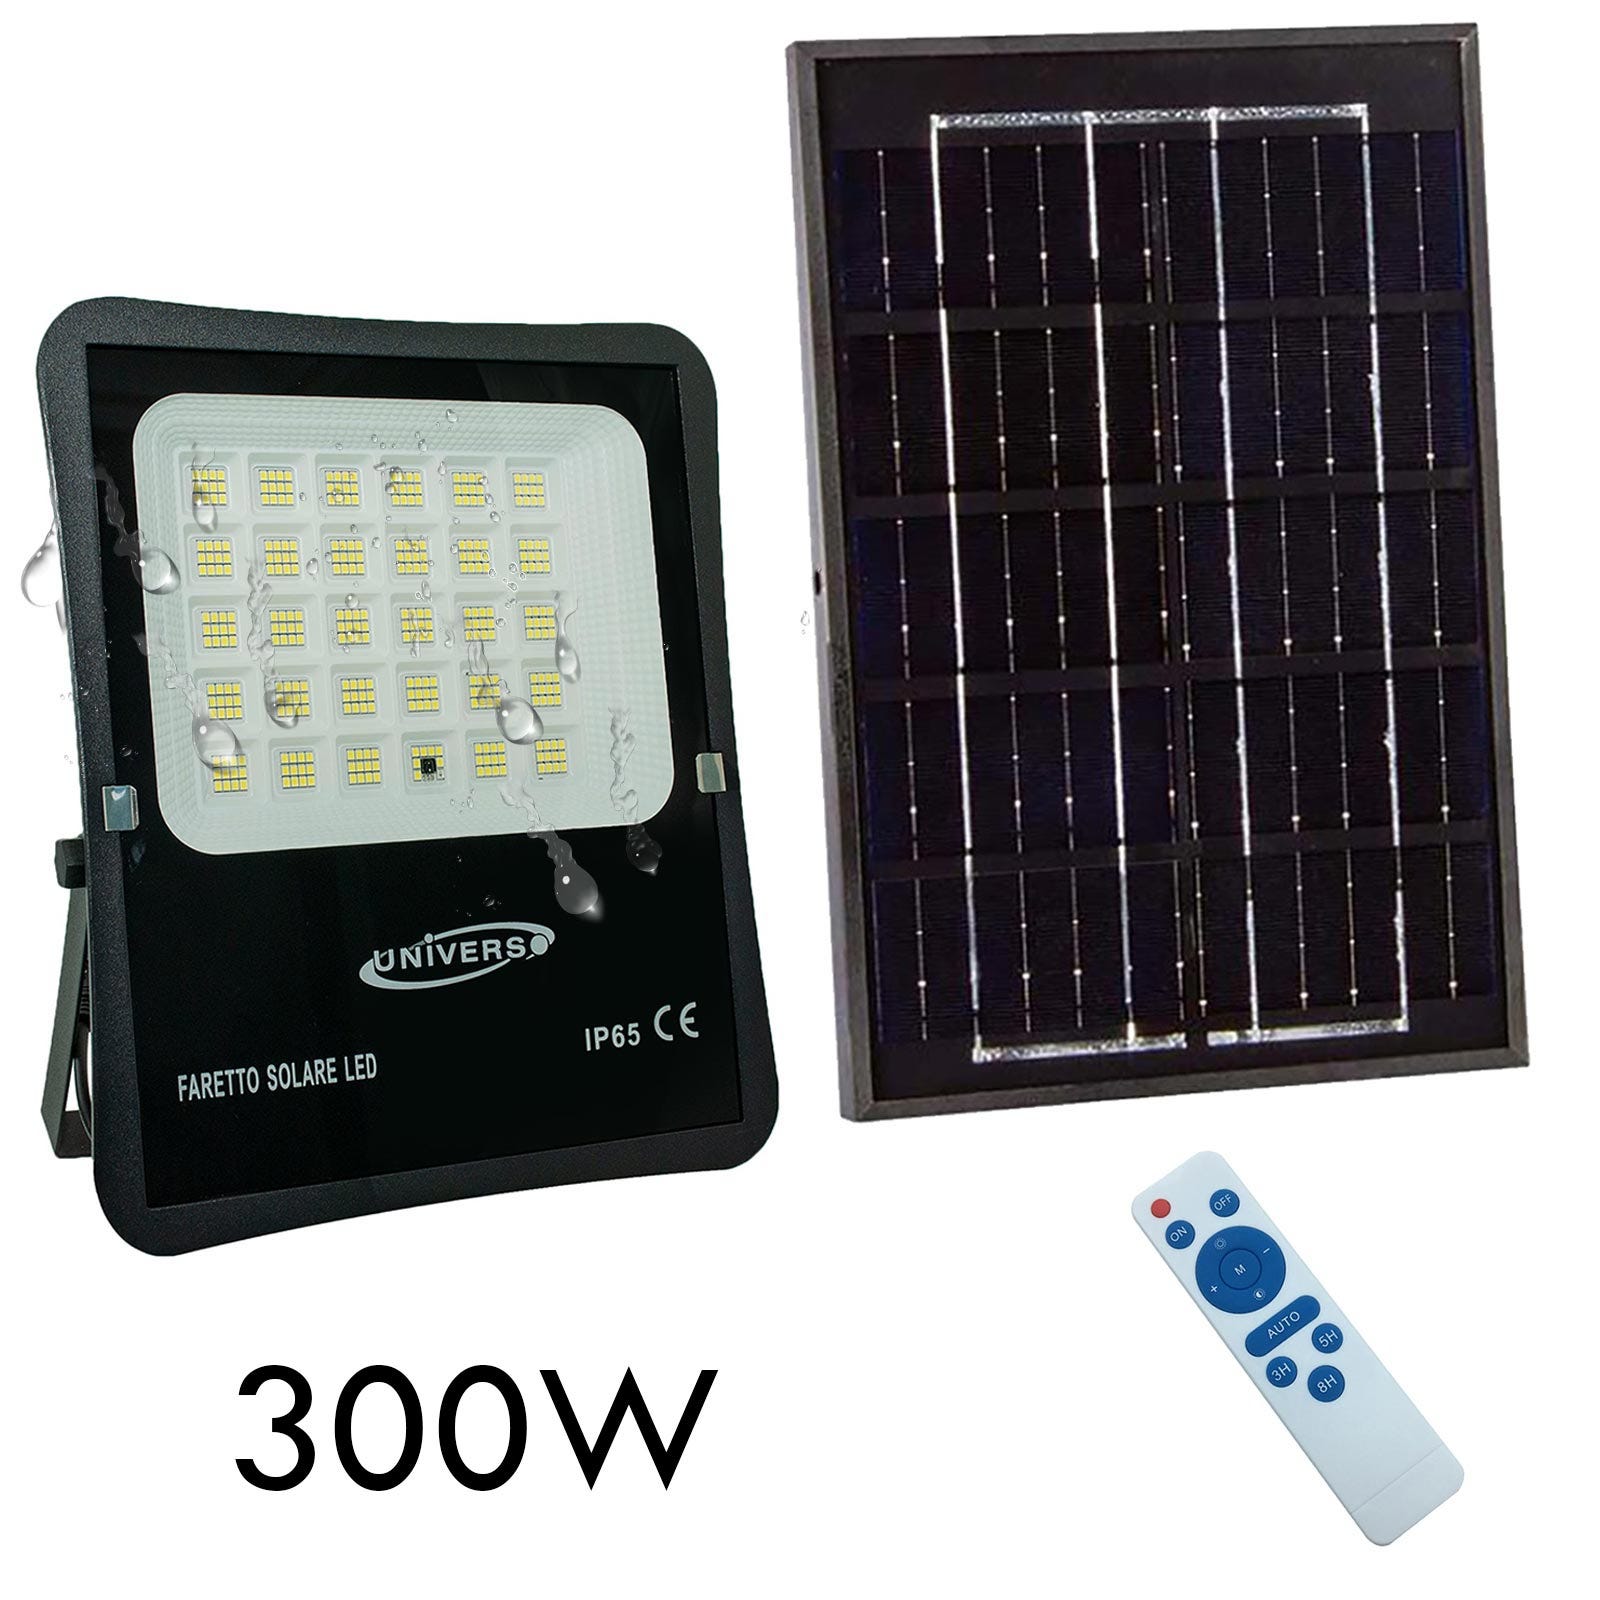 Faro pannello solare IP65 elevata autonomia 12 ore sensore crepuscolare  faretto luce sicurezza giardino cancello 300W